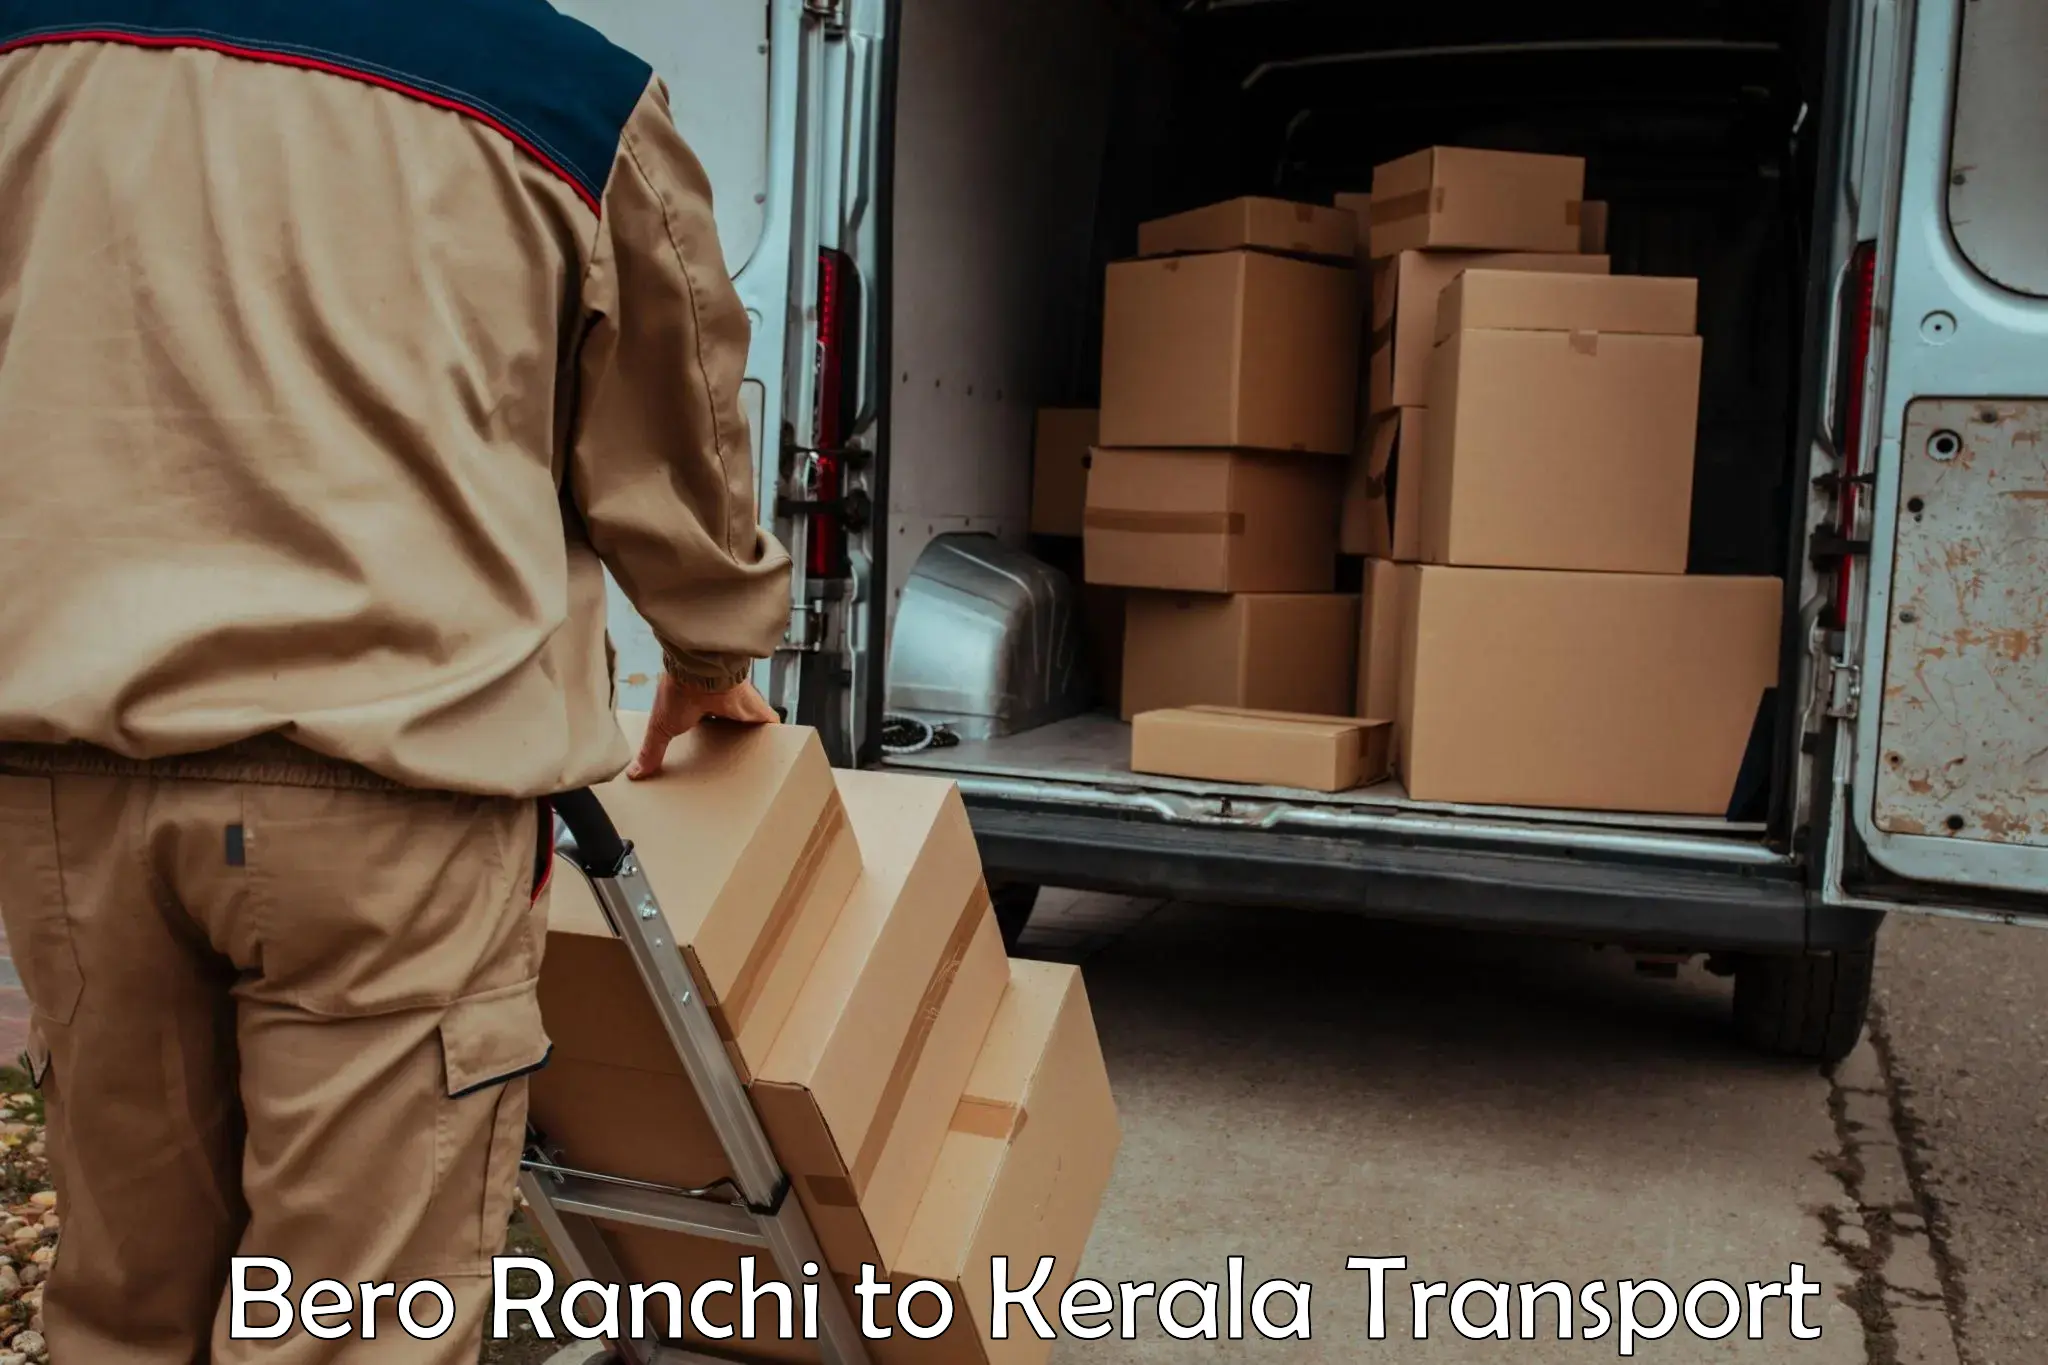 Nearest transport service Bero Ranchi to Udumbanchola